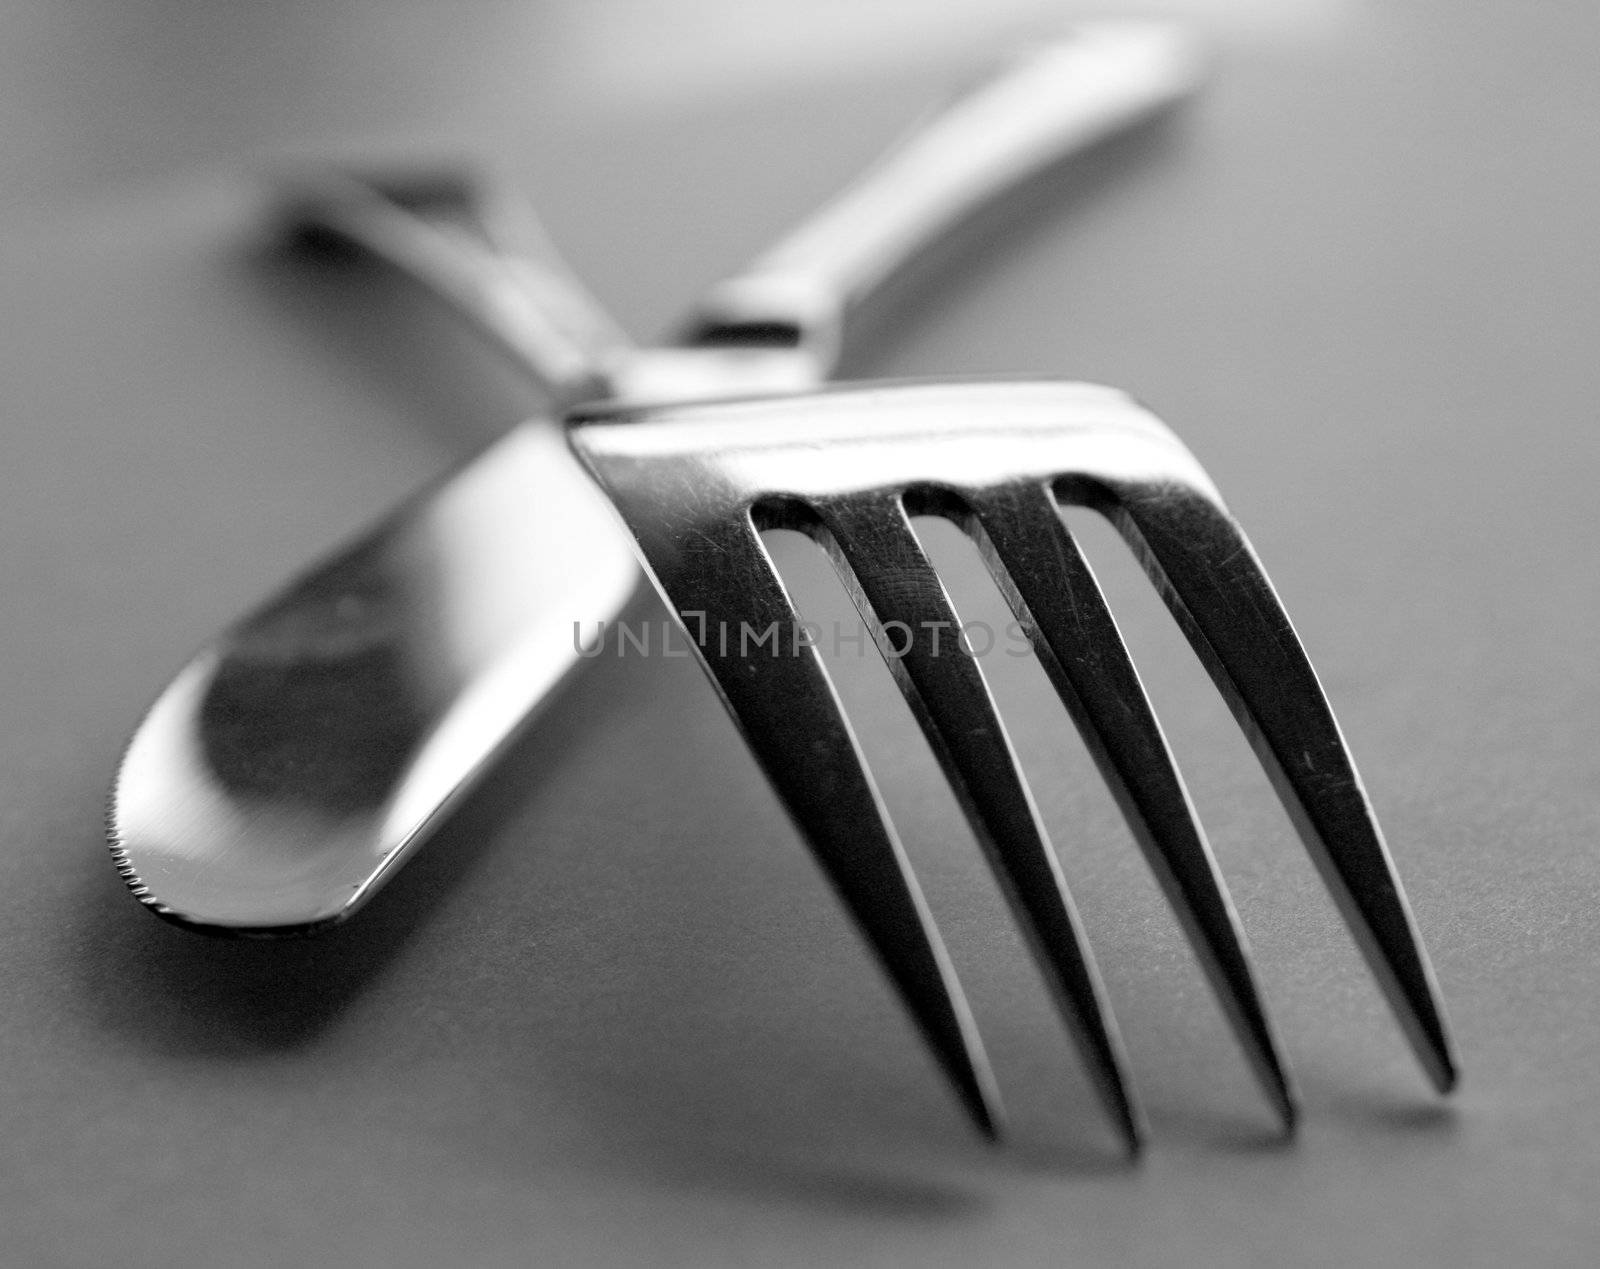 Artistic cutlery by leeser